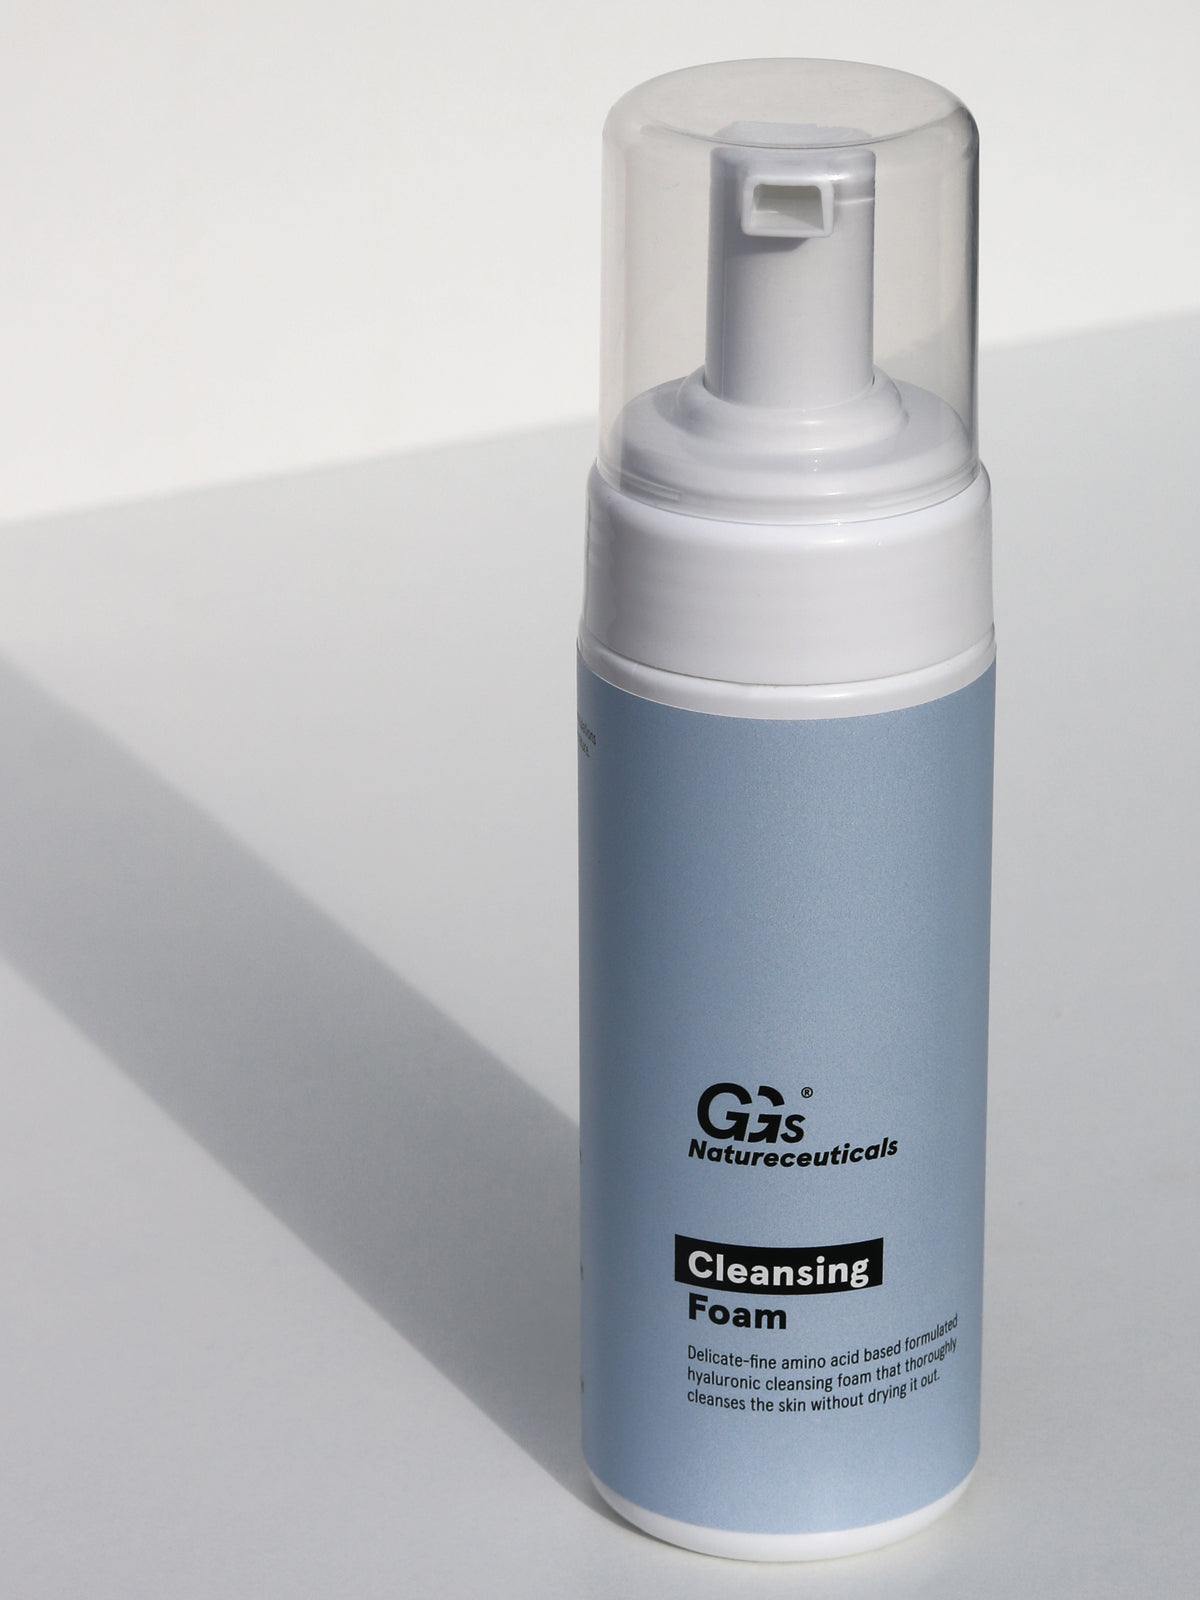 Hyaluronic Reinigungsschaum Natureceuticals | Cleansing | GGs Foam